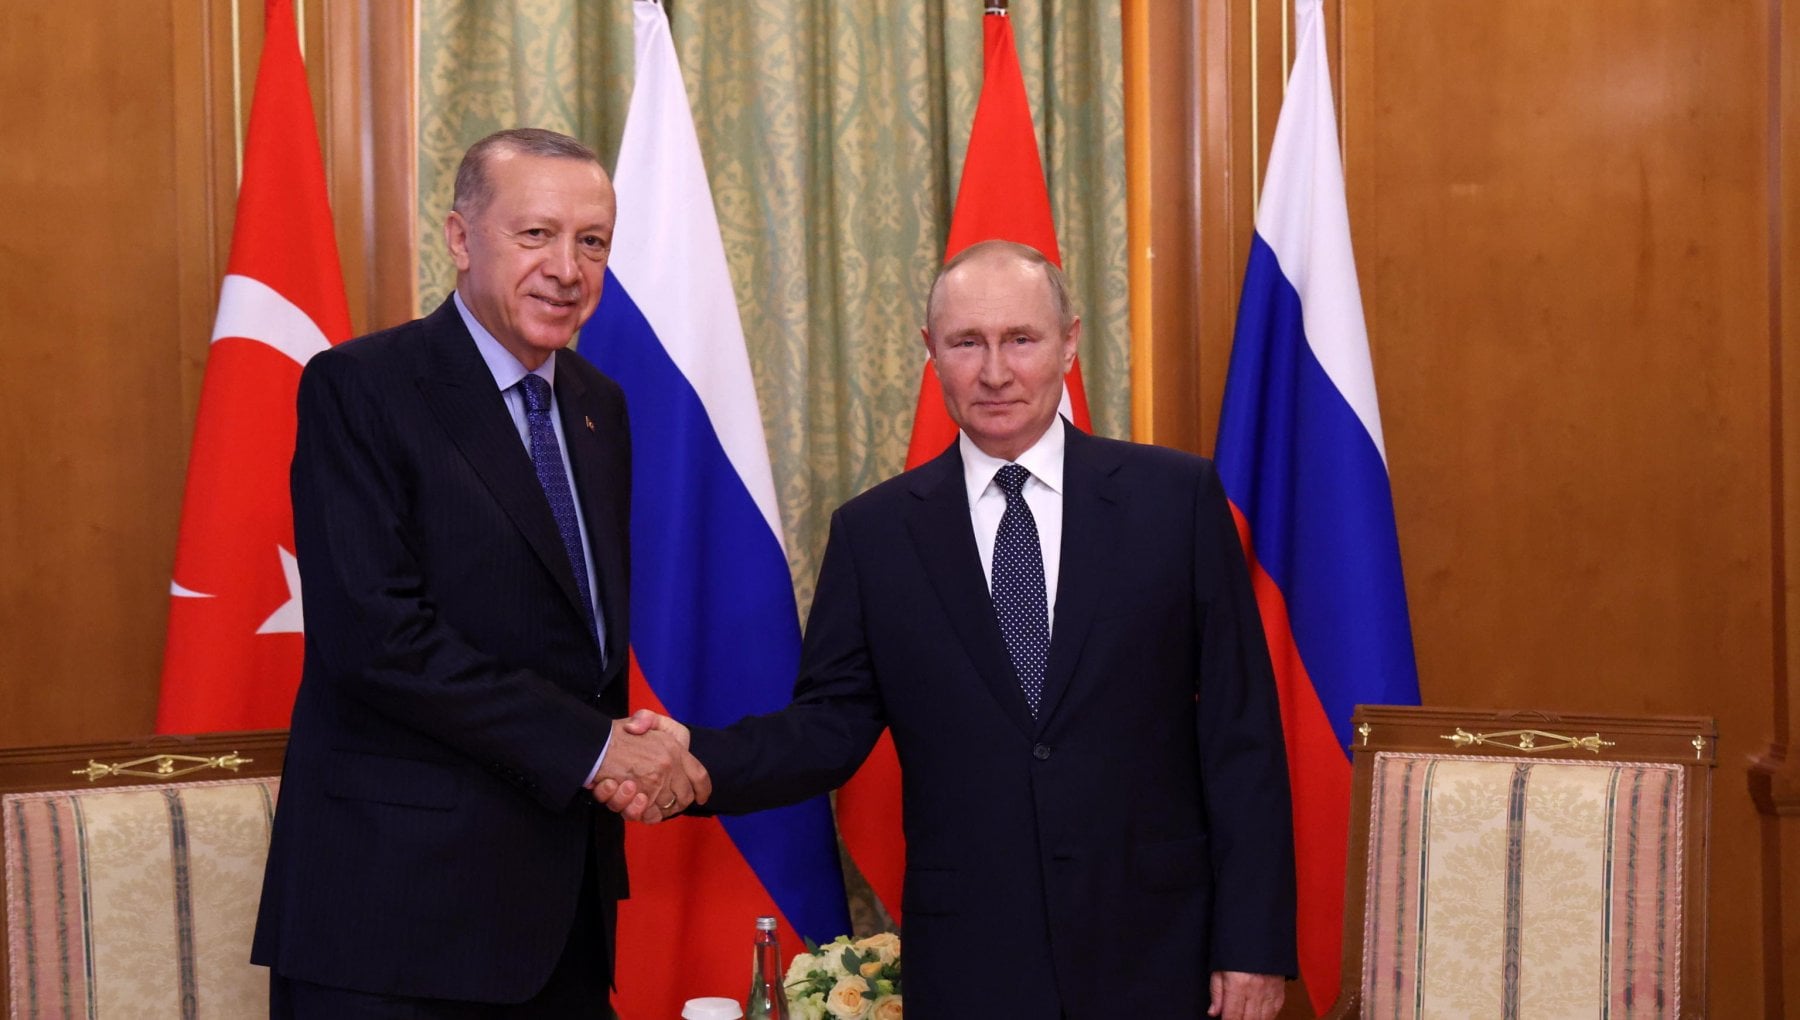 Erdogan-Putin a Sochi: colloqui sul grano ucraino